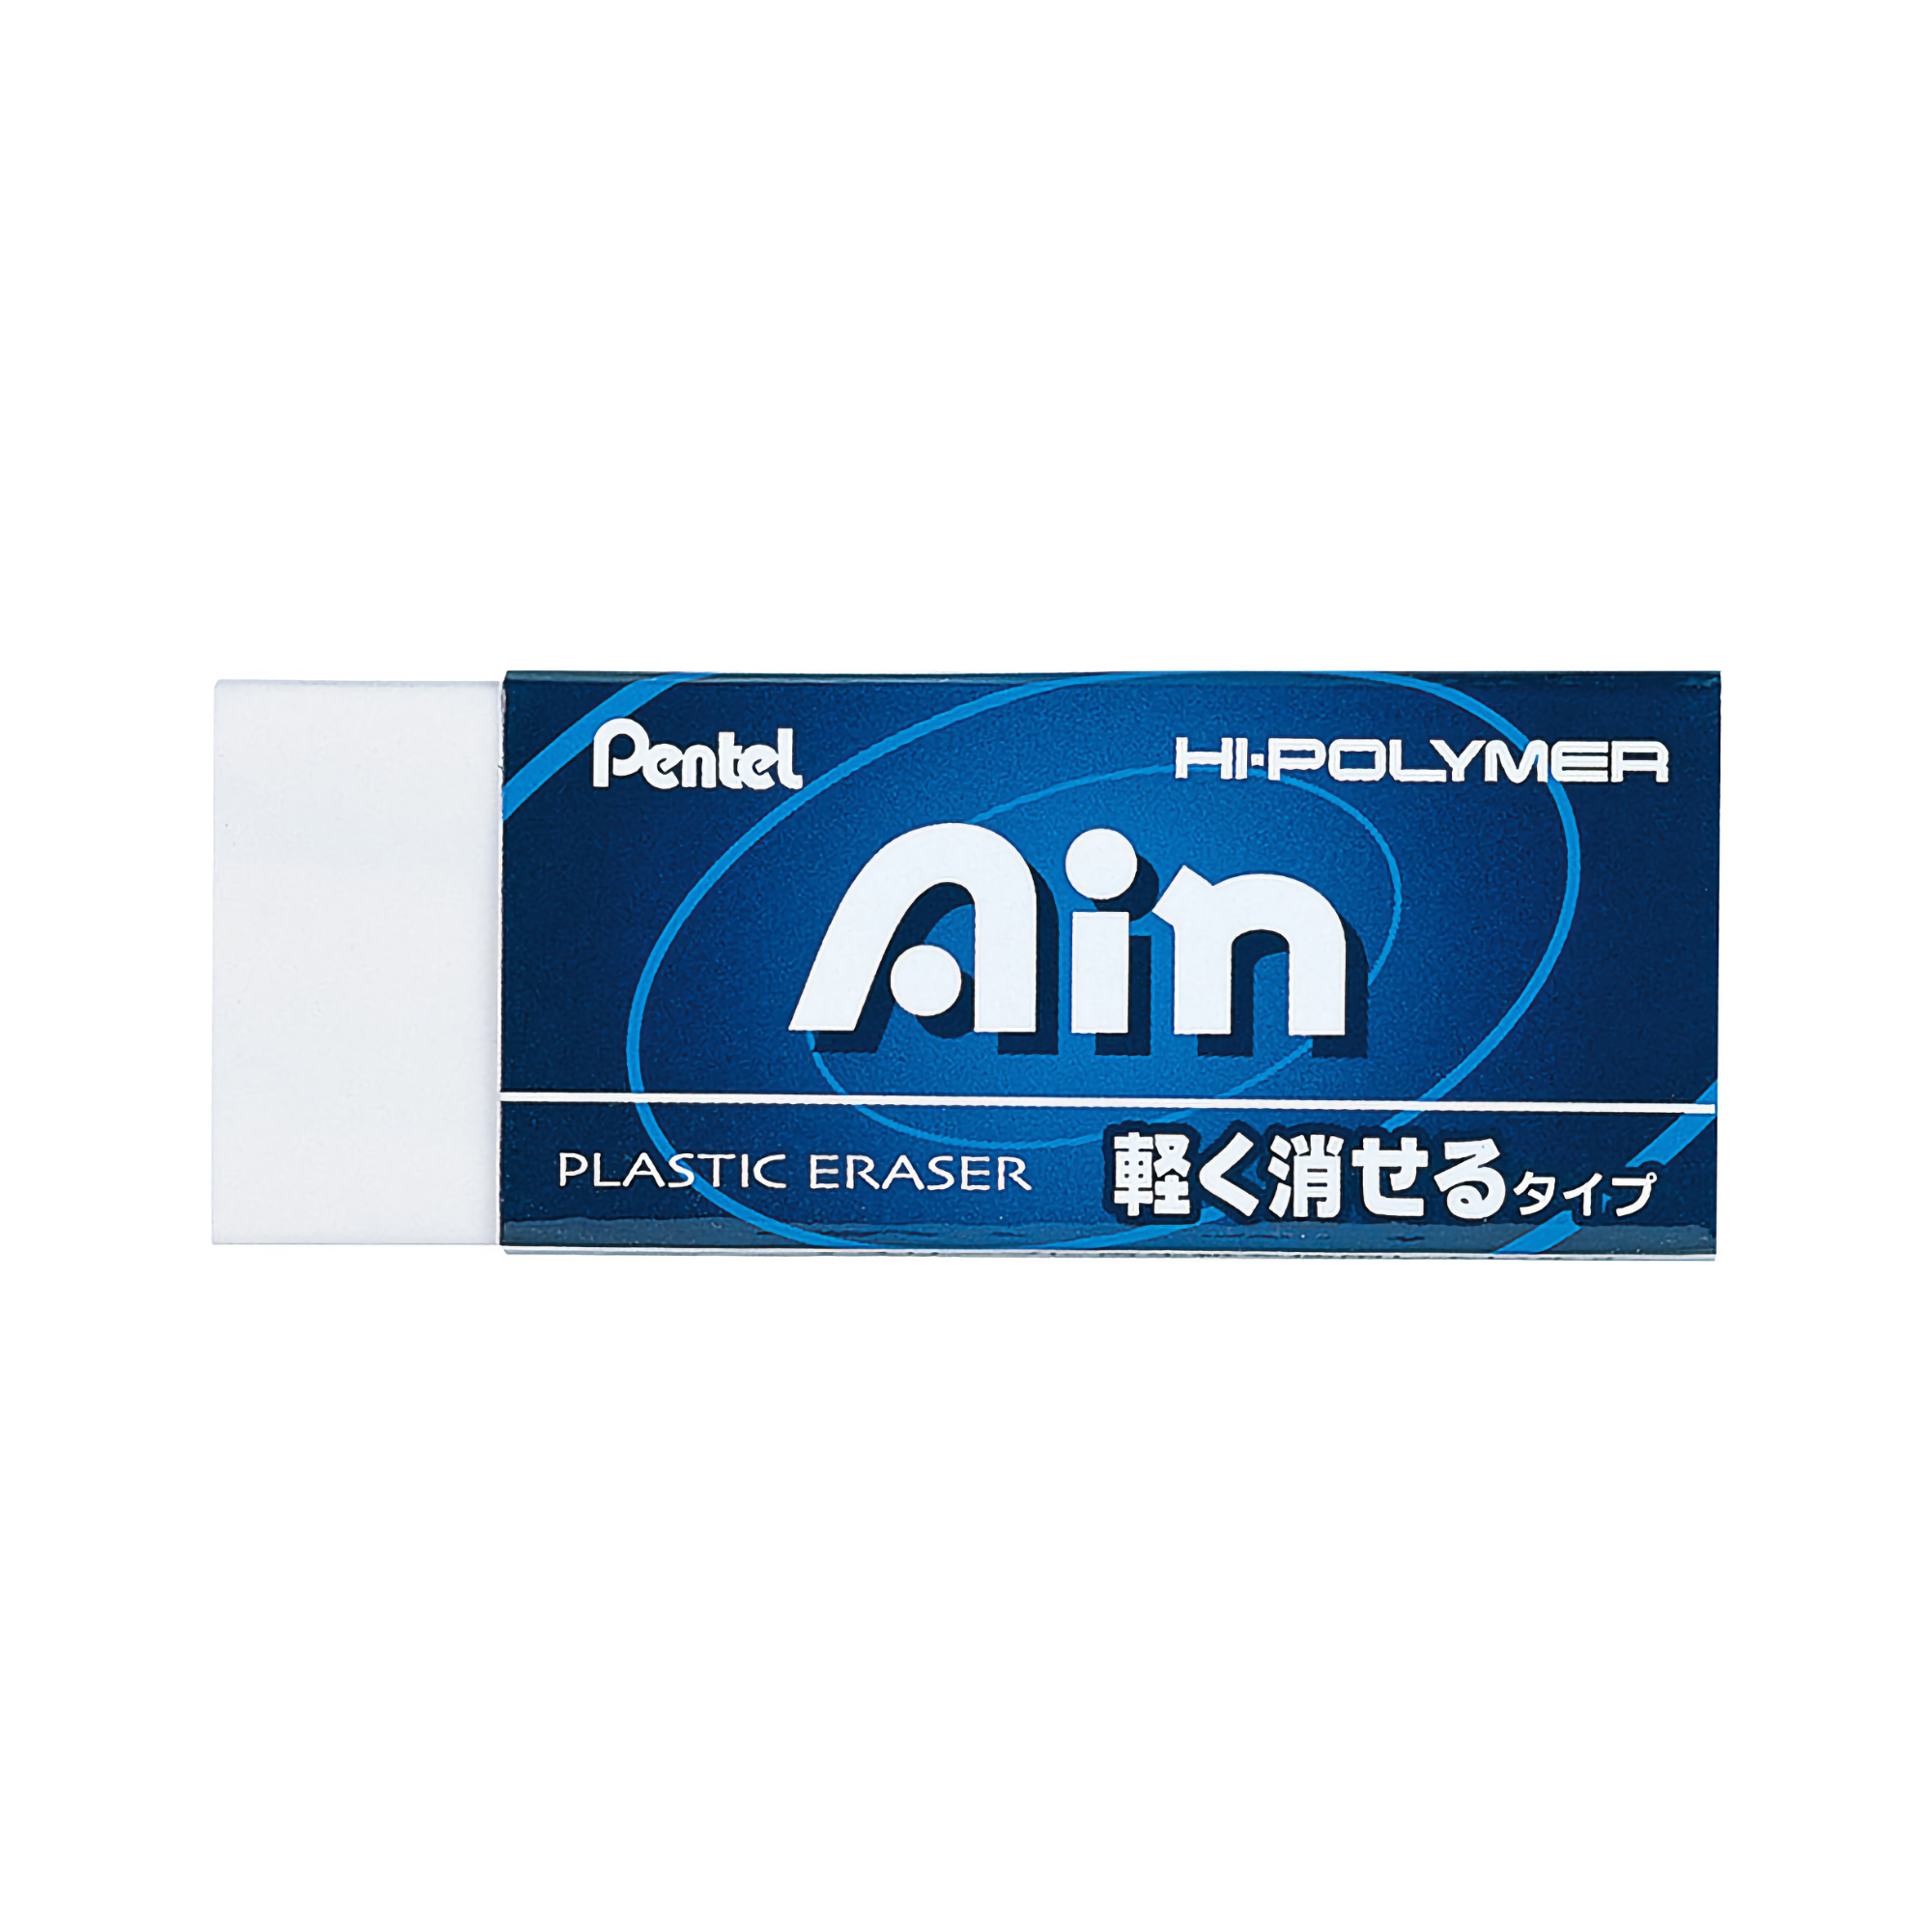 Pentel Hi-Polymer Ain Eraser Light-Erasing Large